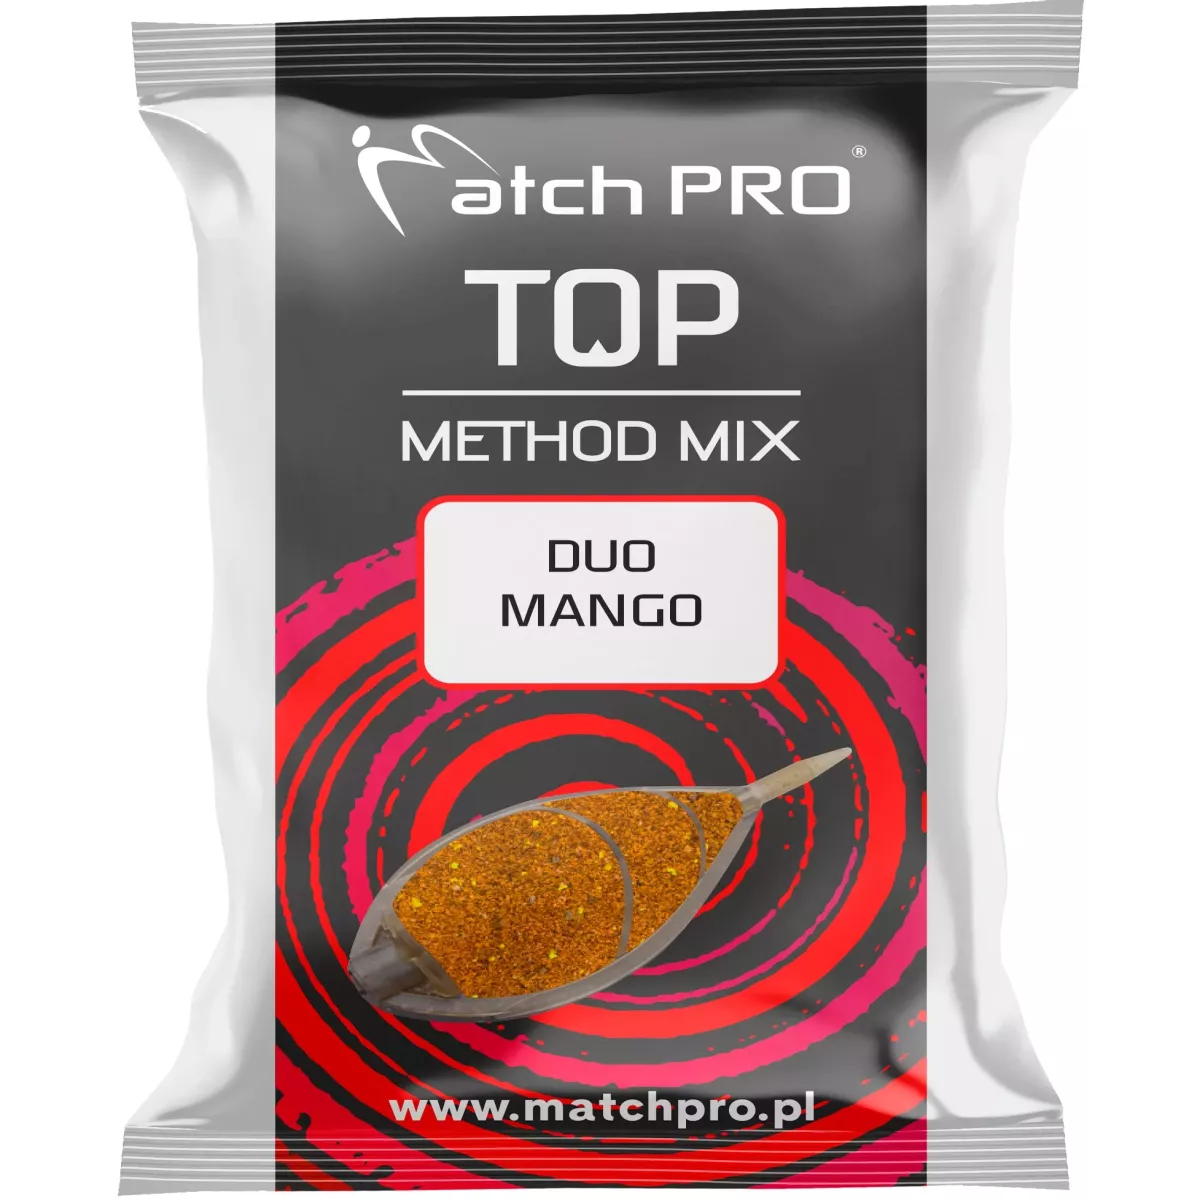 Zanęta MatchPro Method Mix TOP 700g - DUO MANGO